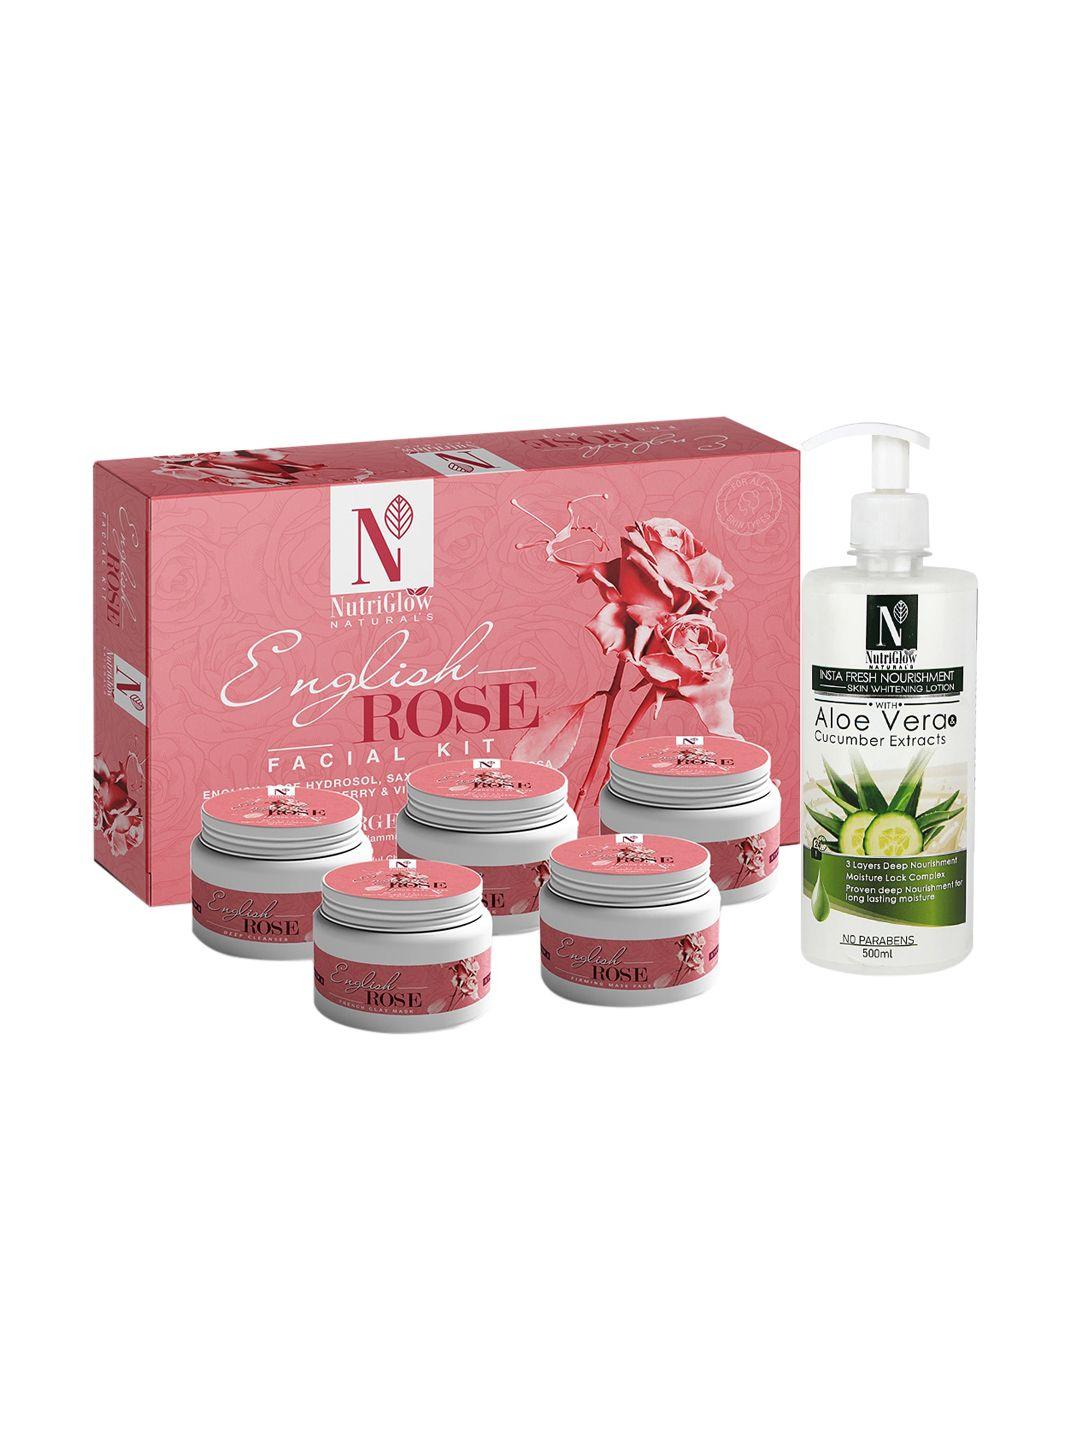 nutriglow naturals english rose facial kit 250g+10ml & skin whitening body lotion 500ml